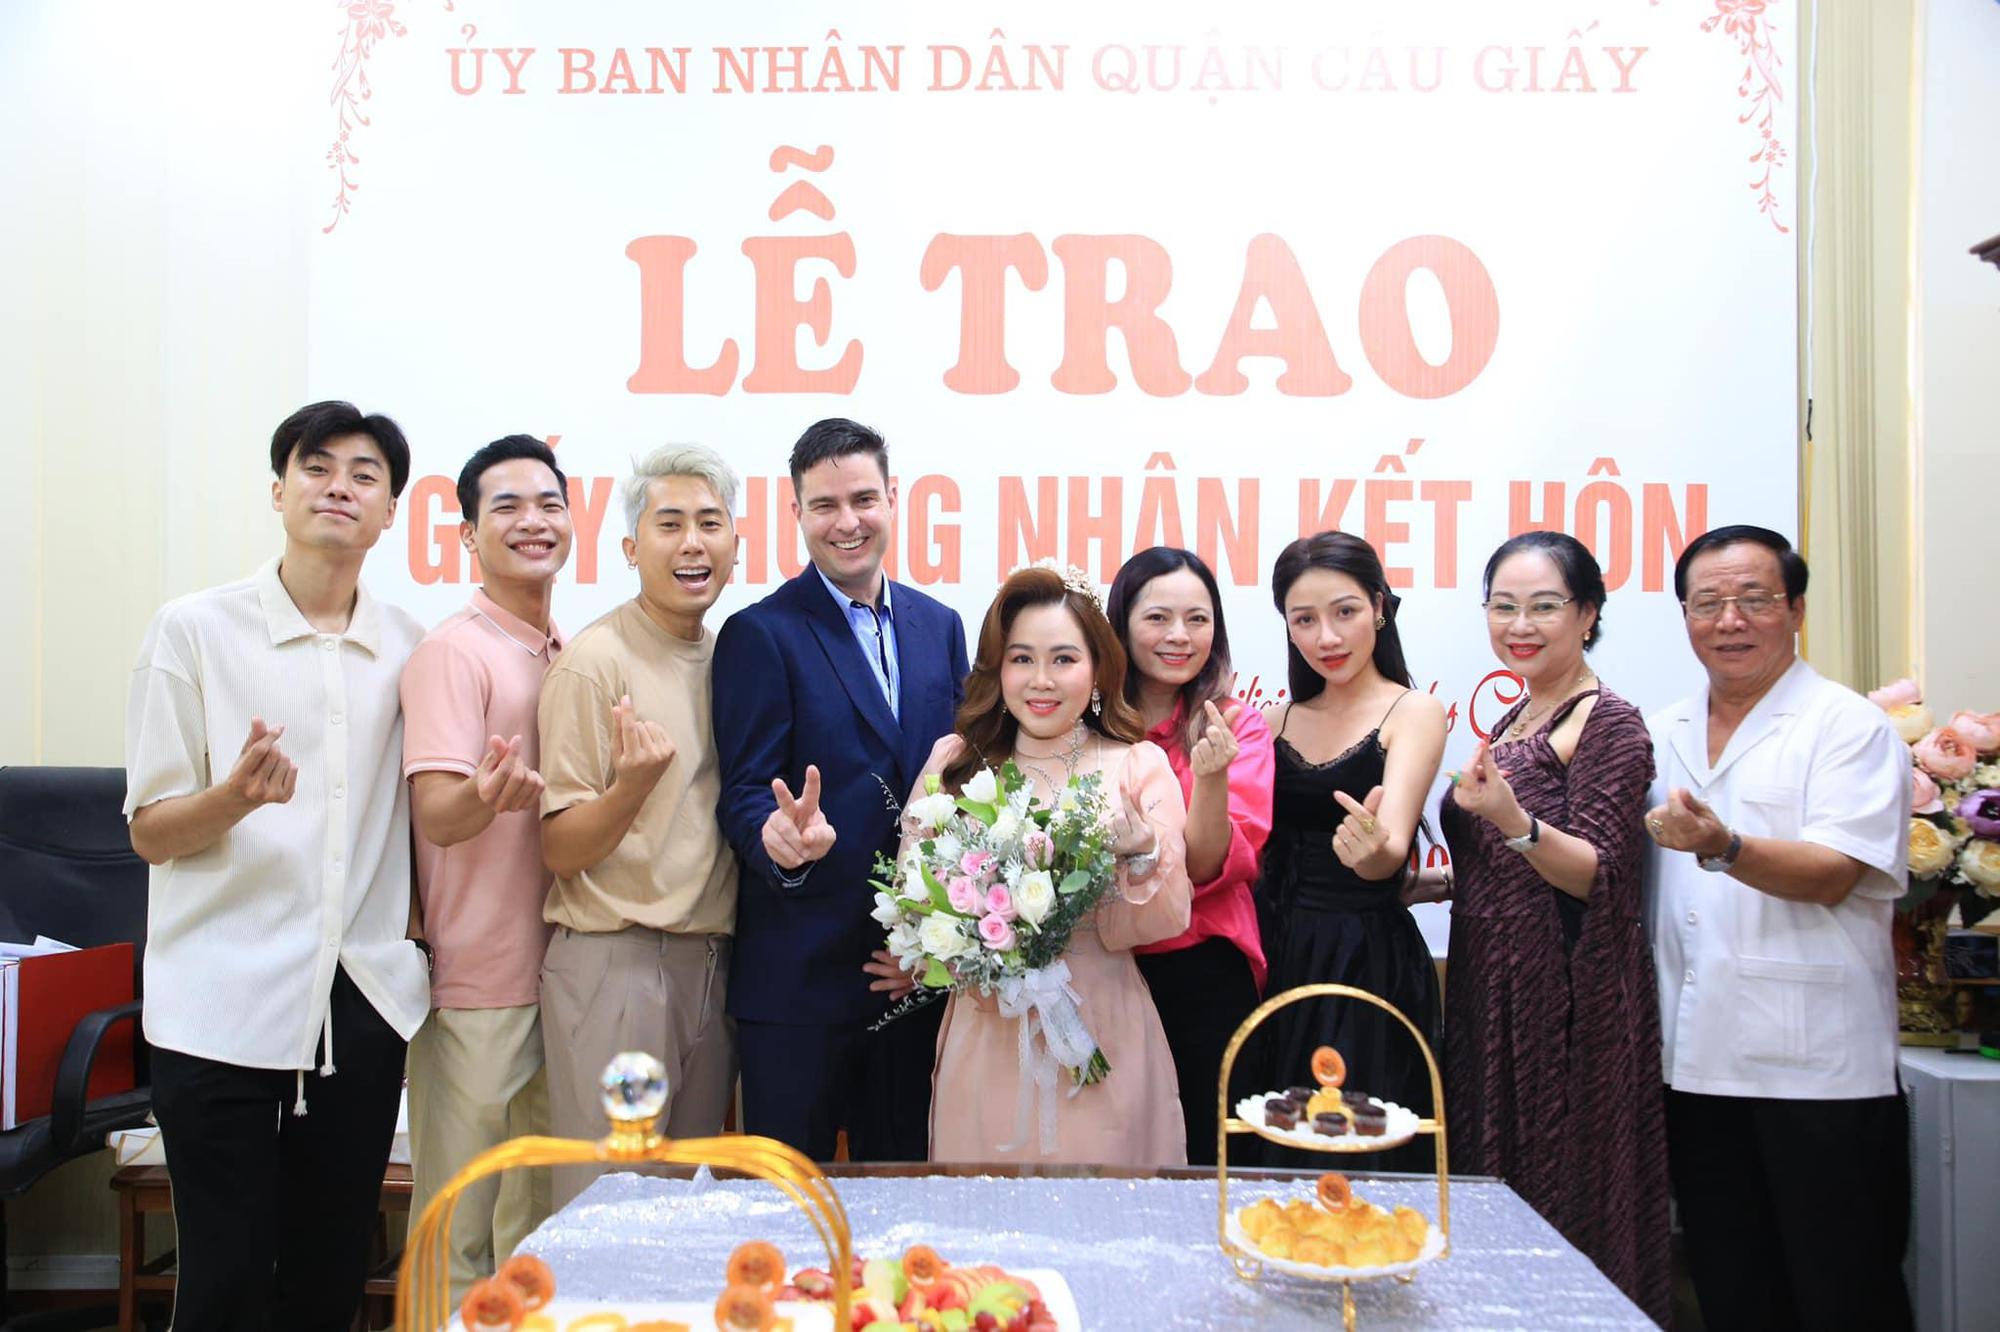 Diễn viên lùn nhất màn ảnh Việt: Chồng tôi hiền, nấu ăn giỏi và sạch sẽ - Ảnh 2.